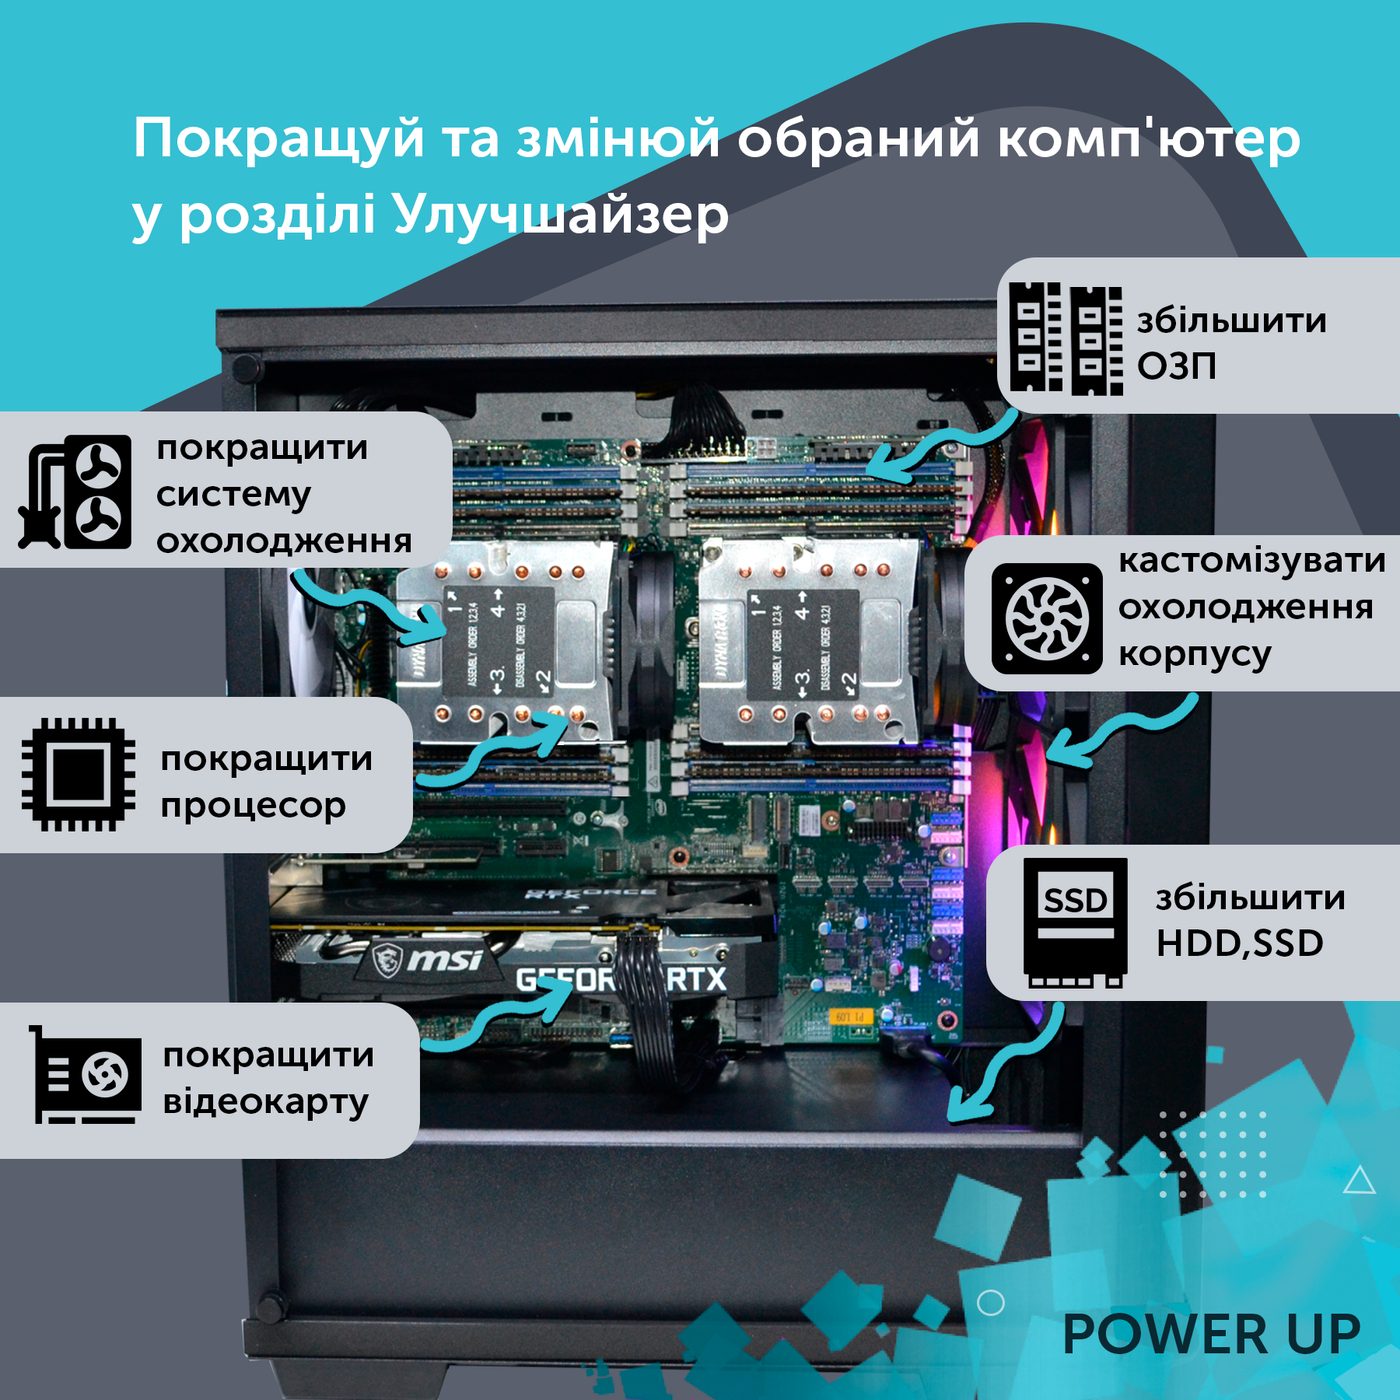 Двухпроцессорная рабочая станция PowerUp #234 Xeon E5 2699 v4 x2/64 GB/HDD 1 TB/SSD 512GB/NVIDIA Quadro M2000 4GB